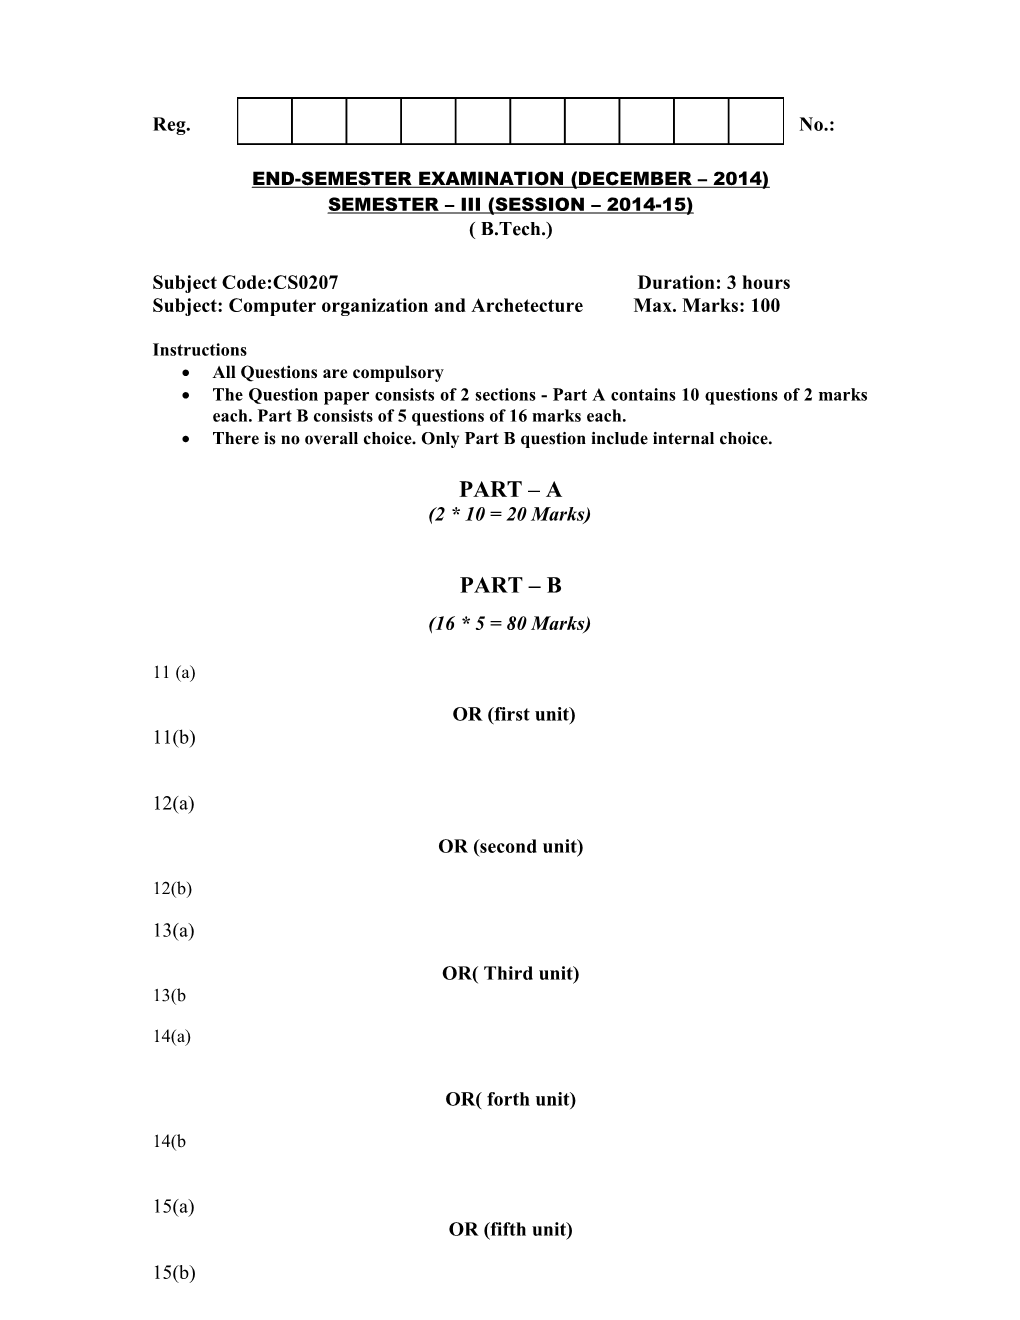 End-Semester Examination (December 2014)